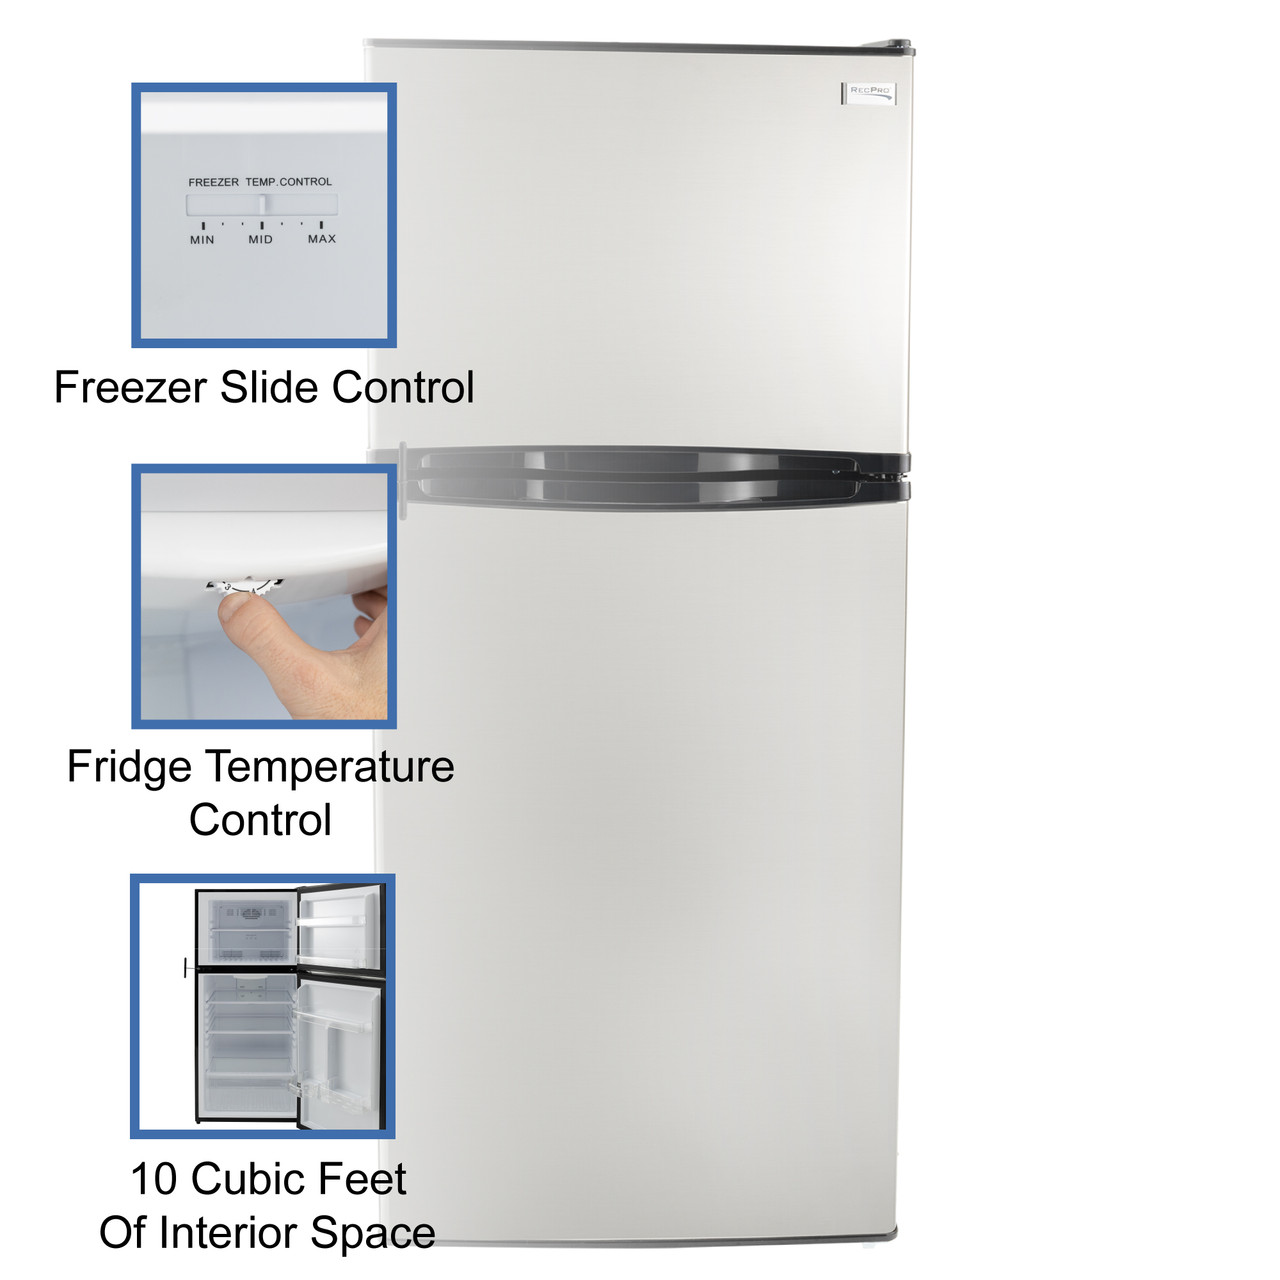 RCA mini fridge - appliances - by owner - sale - craigslist